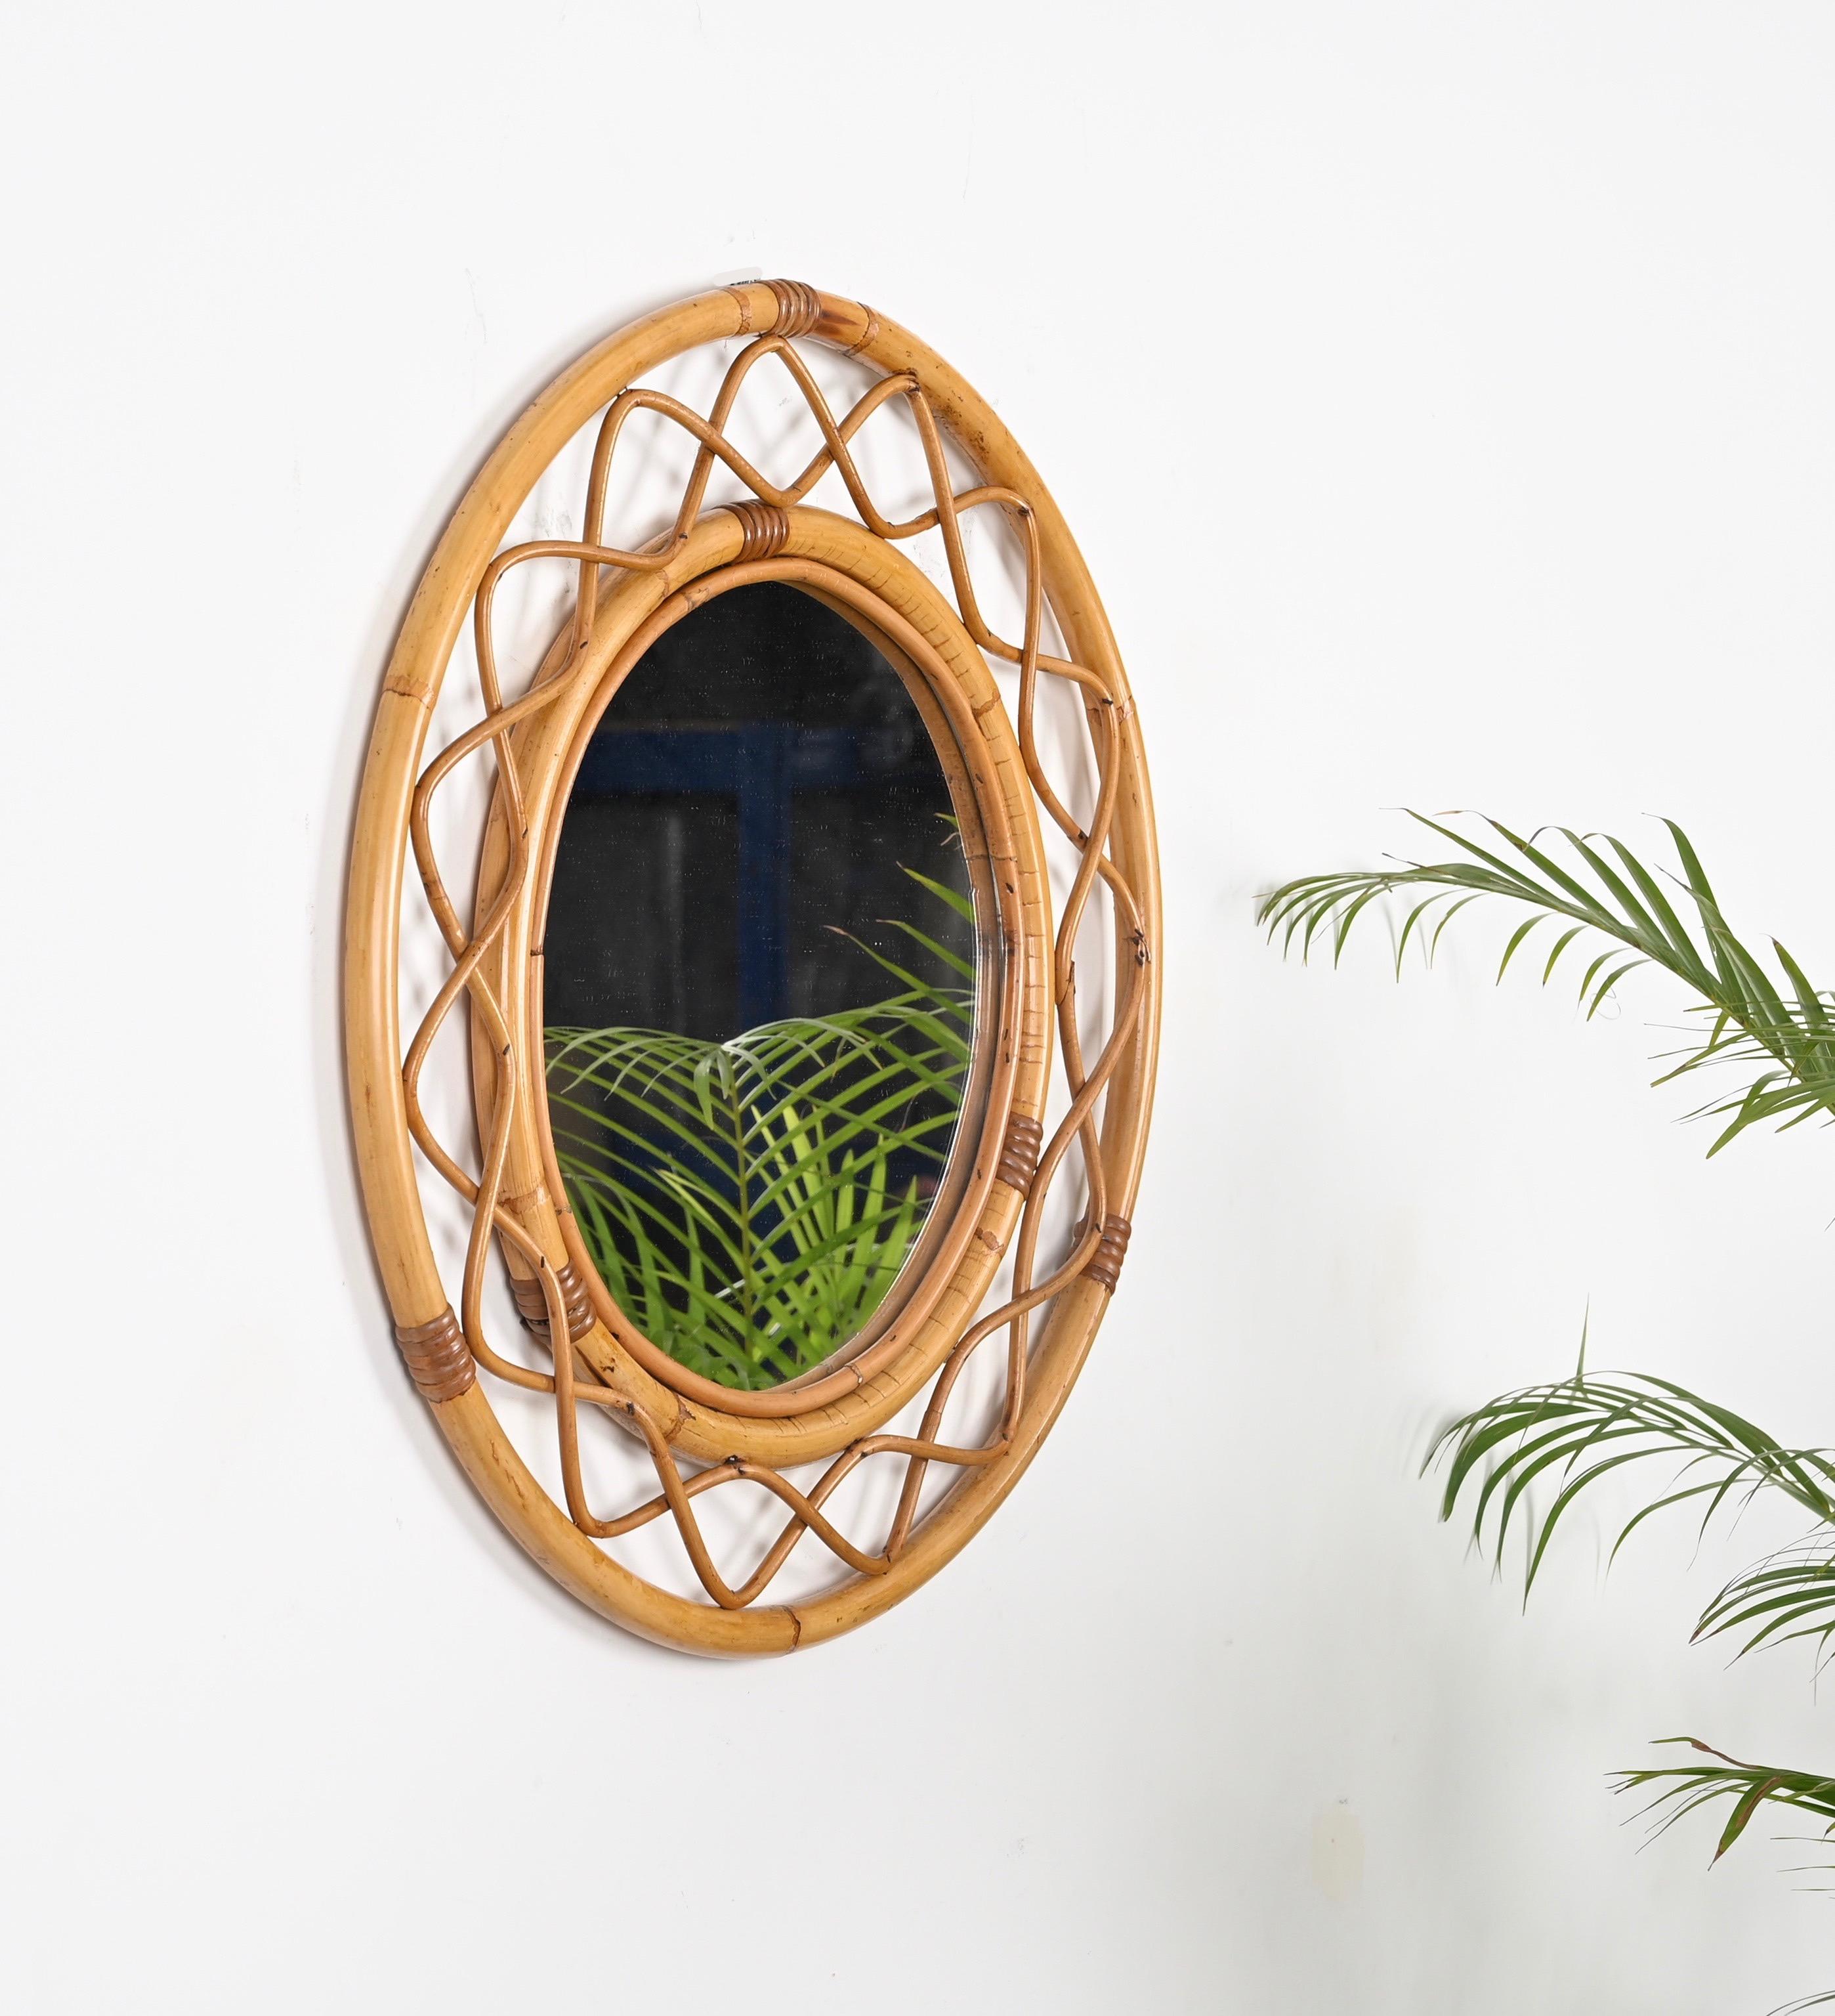 Superbe miroir rond de style Côte d'Azur du milieu du siècle, entièrement fabriqué en bambou, rotin et osier. Ce charmant miroir organique a été fabriqué à la main en Italie dans les années 1960. 

Ce superbe miroir présente un double cadre rond en